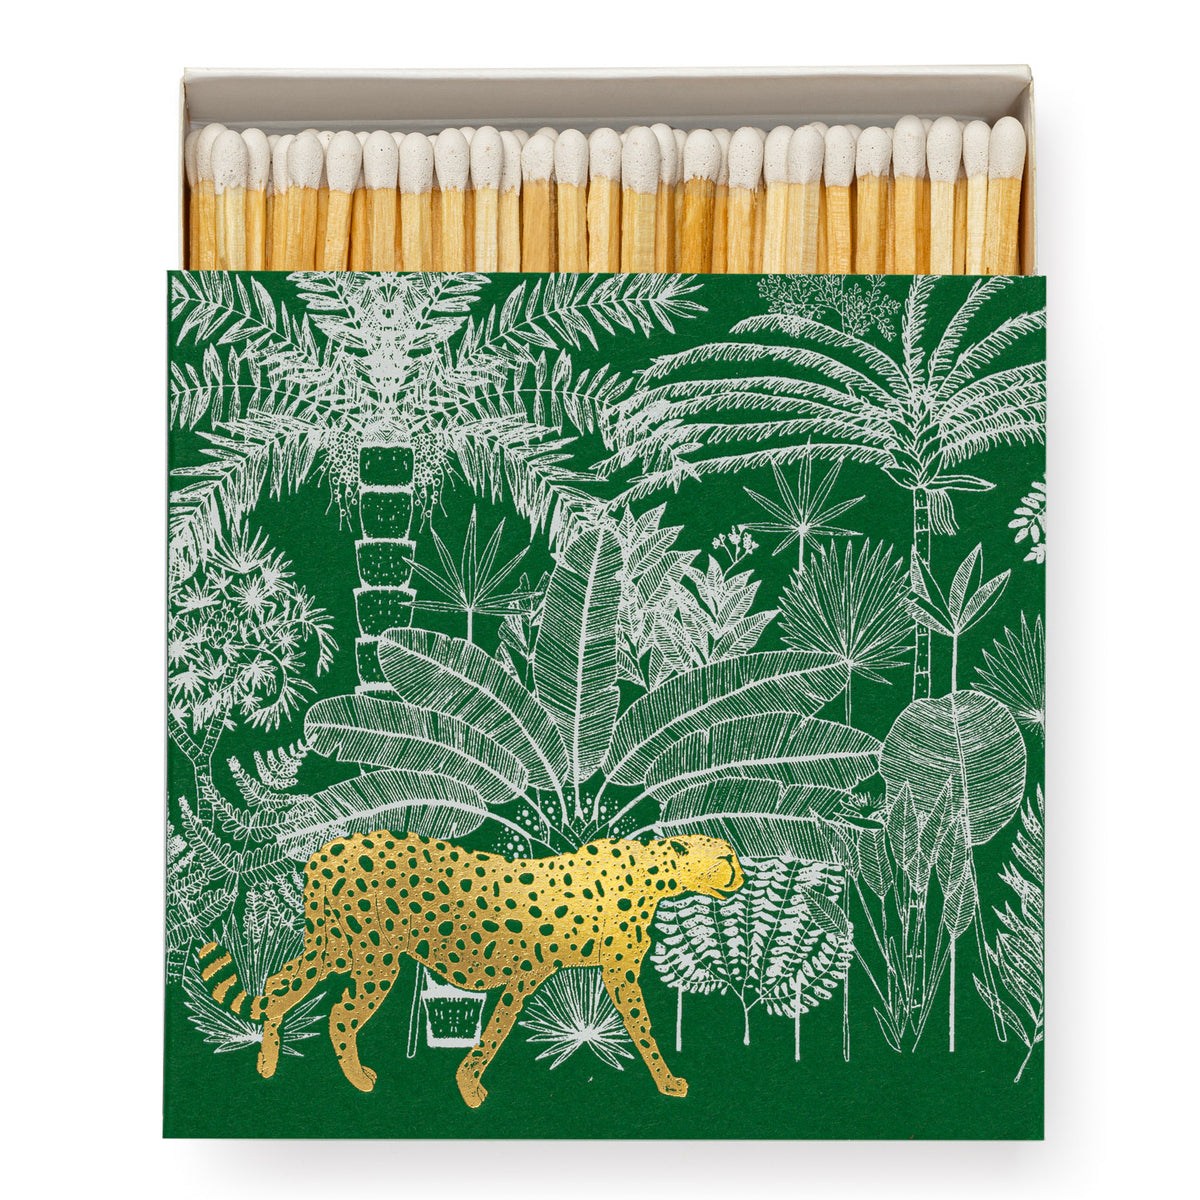 Caja de cerillas cuadrada de guepardo verde